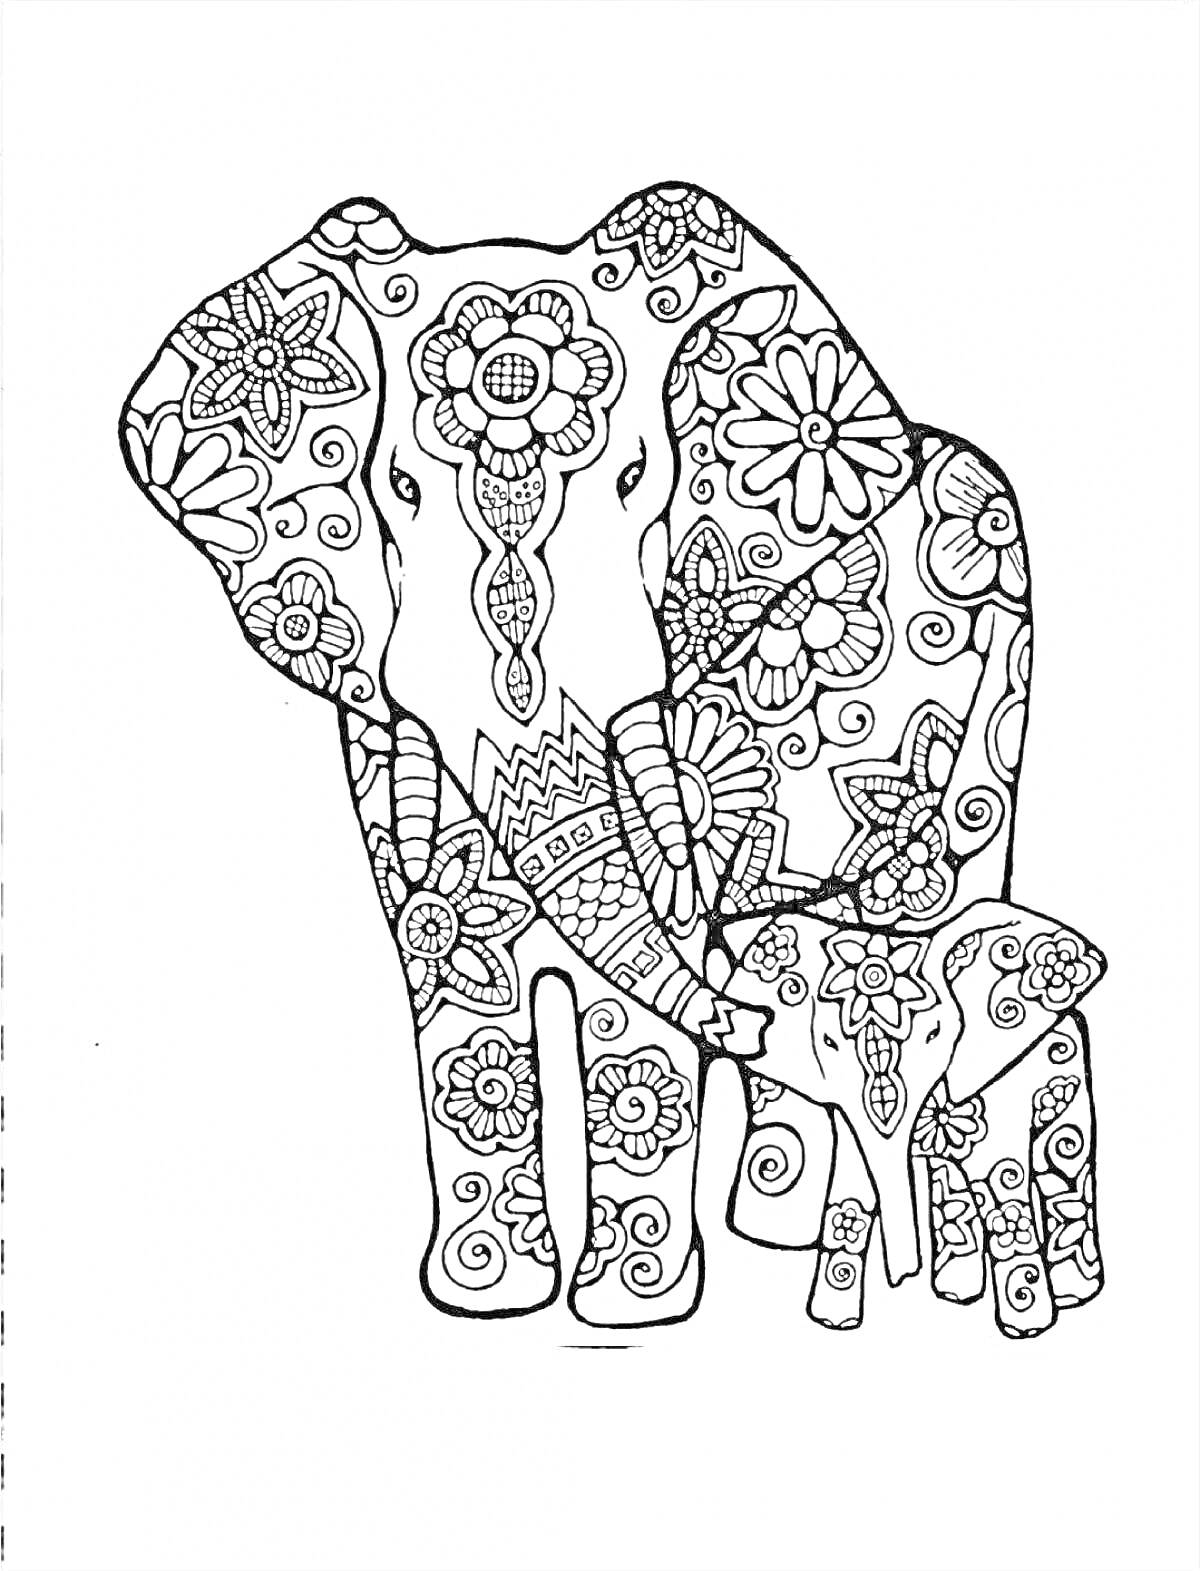 На раскраске изображено: Антистресс, Цветочные узоры, Слон, Детеныш слона, Цветы, Орнамент, Медитативное искусство